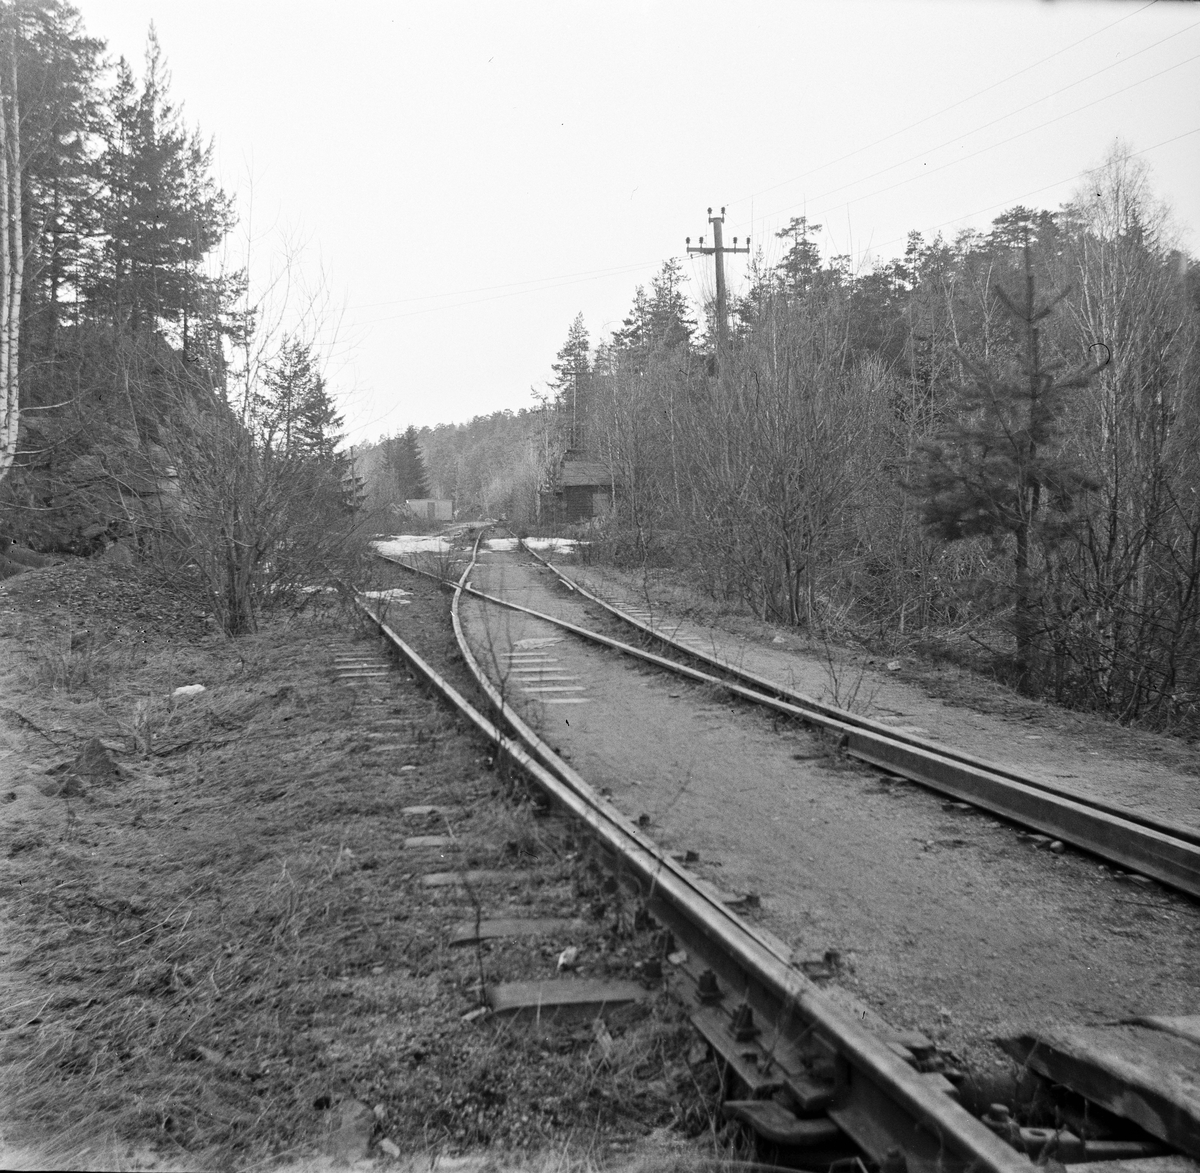 Fra nedlagt trase på Østfoldbanen ved Holmlia. Banen ble lagt om via Hauketo i 1925 i forbindelse med at Ljansviadukten ble tatt ut av bruk, men deler av den gamle traseen ble beholdt som sidespor.